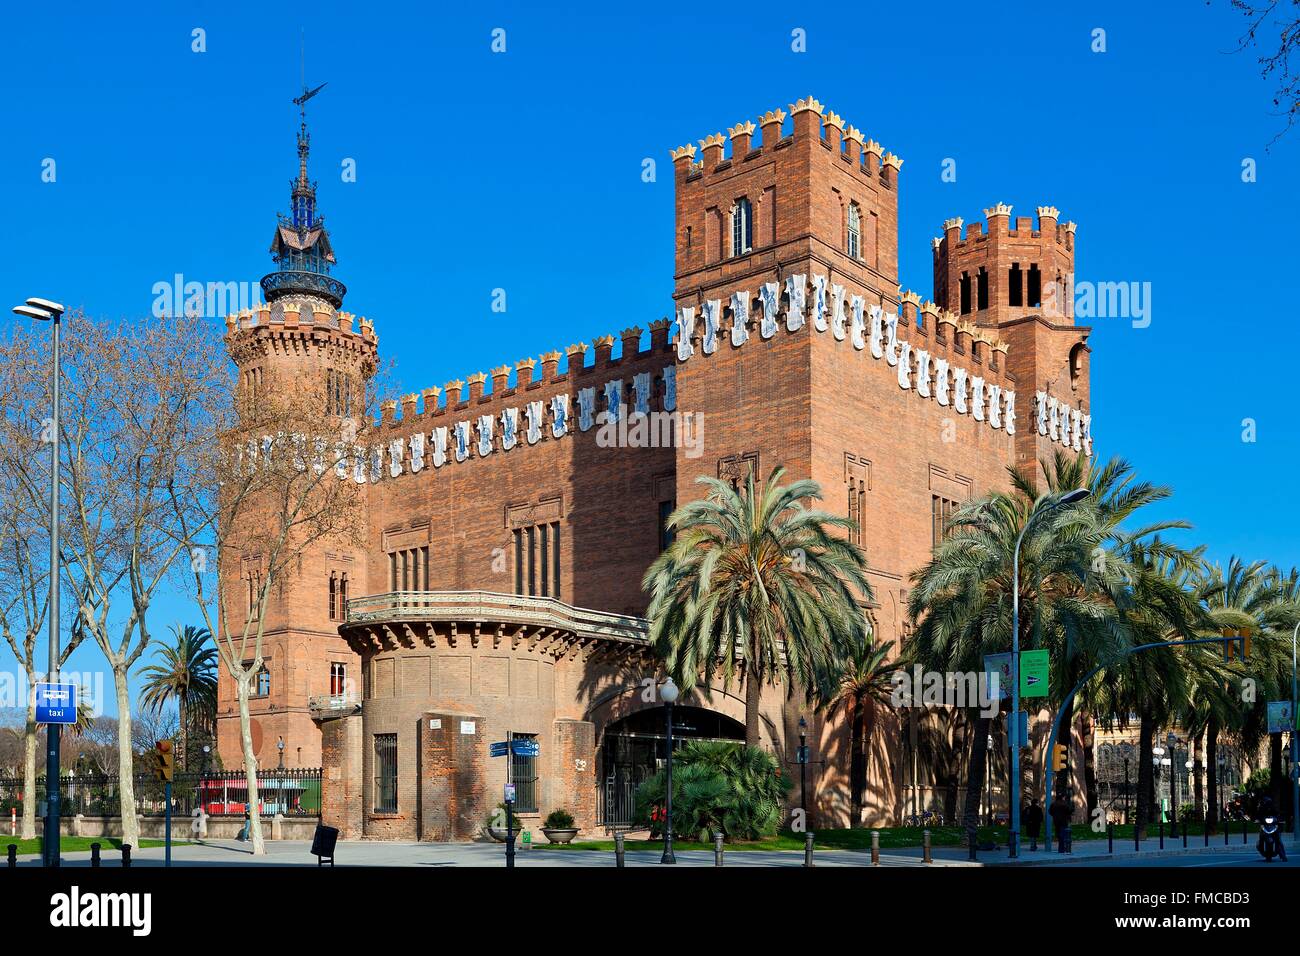 Espagne, Catalogne, Barcelone, Los dragones château et musée de zoologie dans le parc de la Ciutadella par l'architecte Domenech i Montaner Banque D'Images